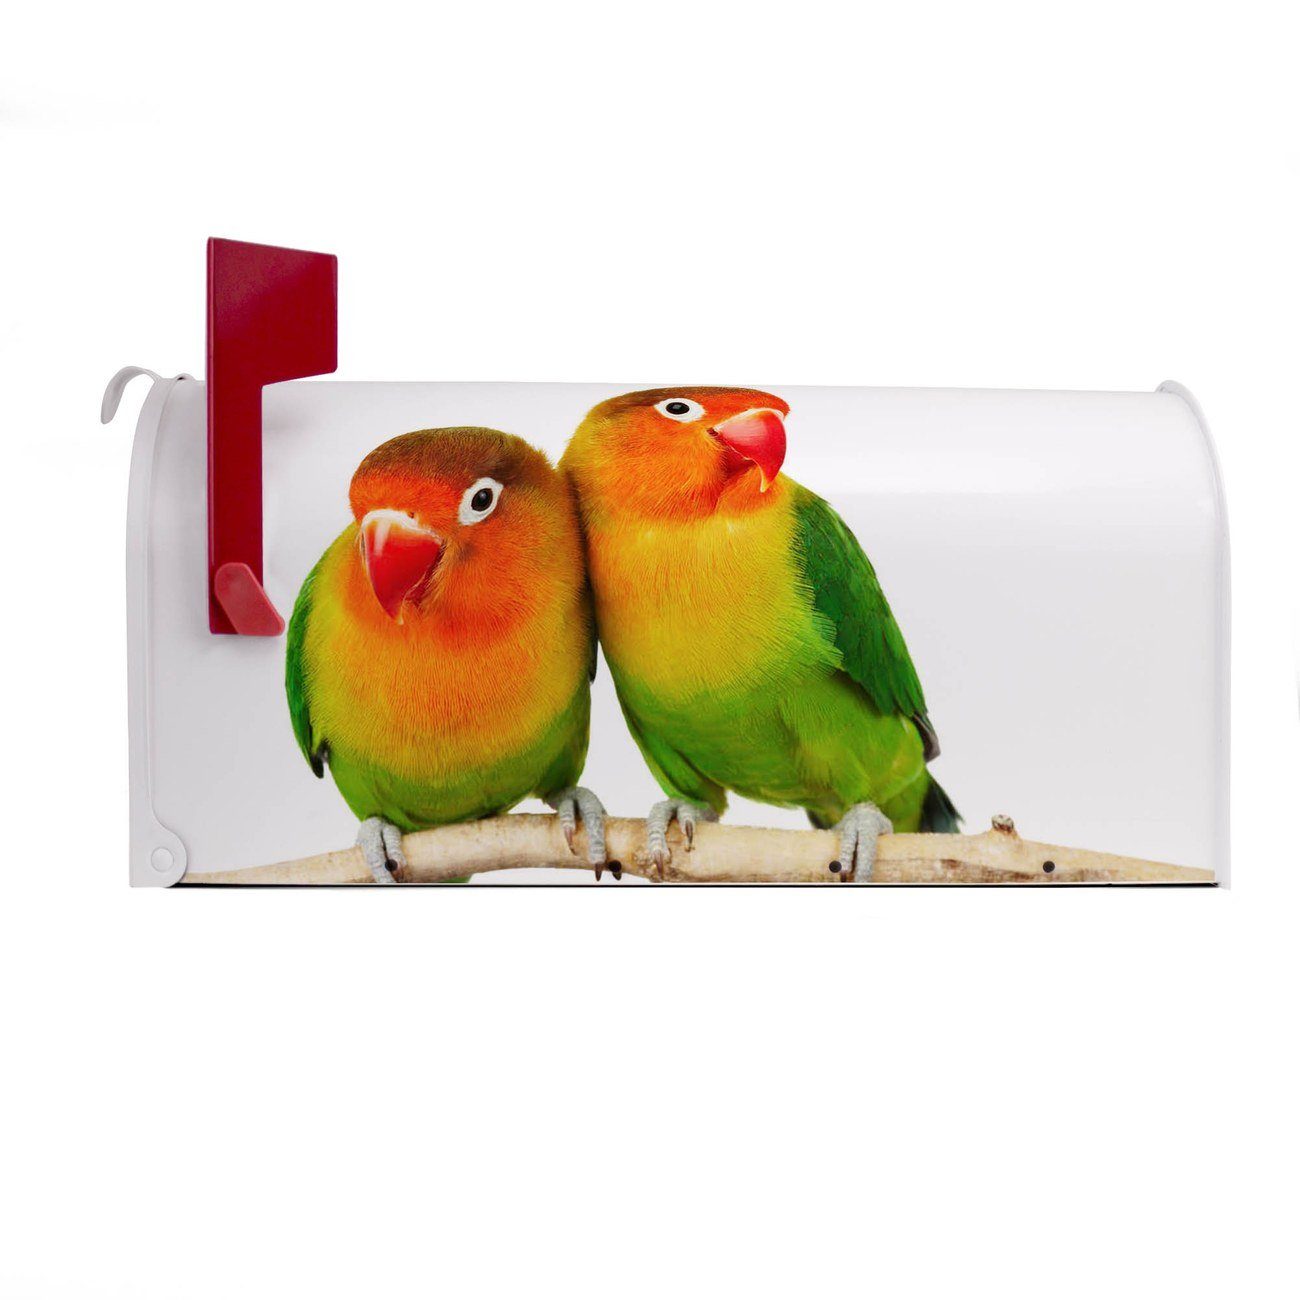 51 17 banjado x x Papageien 22 Mississippi Mailbox cm original Amerikanischer (Amerikanischer Briefkasten Briefkasten, aus USA), weiß